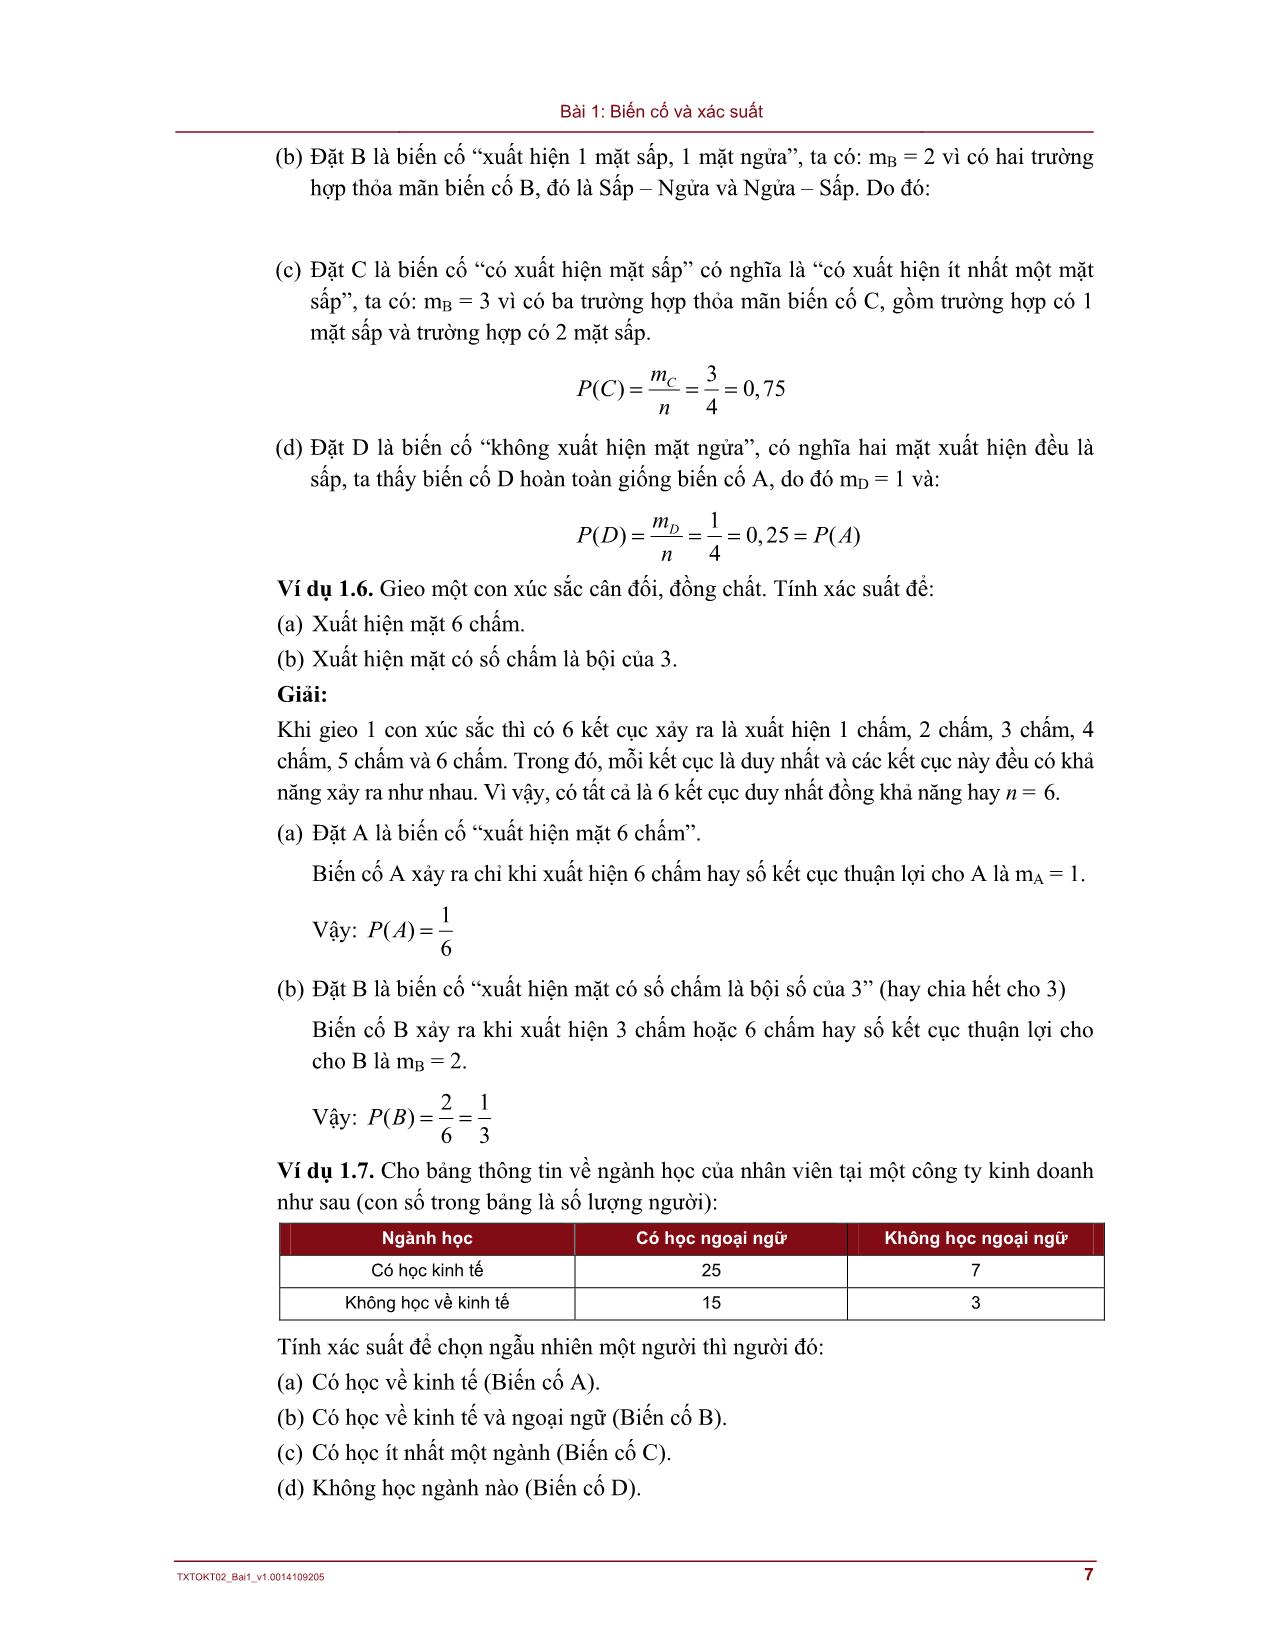 Bài giảng Lý thuyết xác suất và thống kê - Bài 1: Biến cố và xác suất trang 7